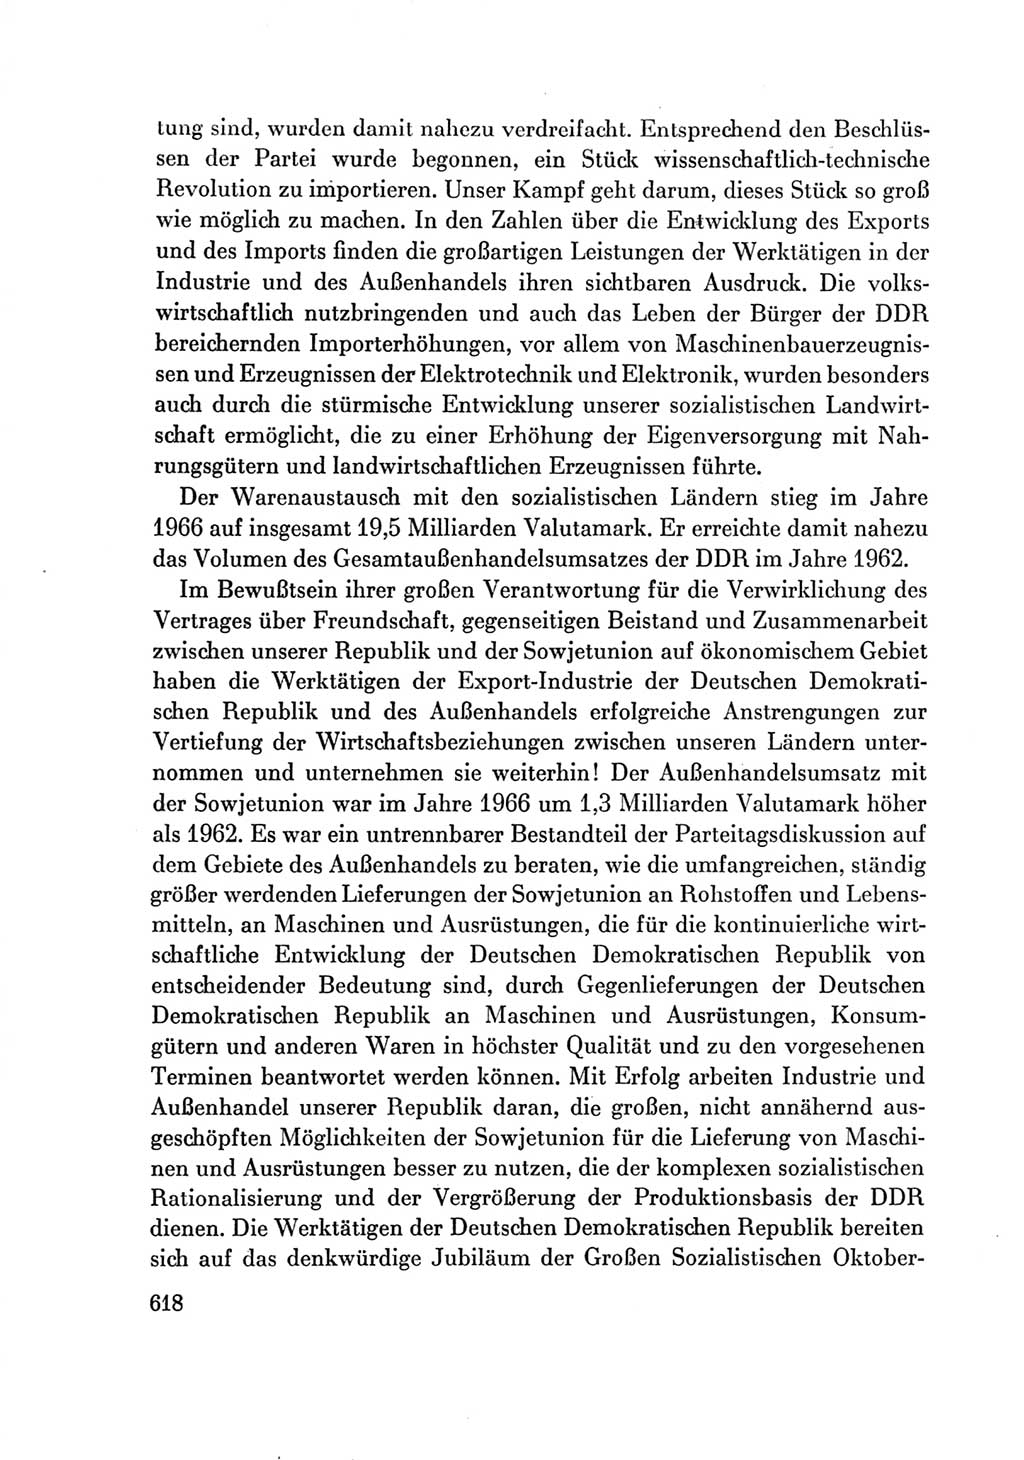 Protokoll der Verhandlungen des Ⅶ. Parteitages der Sozialistischen Einheitspartei Deutschlands (SED) [Deutsche Demokratische Republik (DDR)] 1967, Band Ⅲ, Seite 618 (Prot. Verh. Ⅶ. PT SED DDR 1967, Bd. Ⅲ, S. 618)